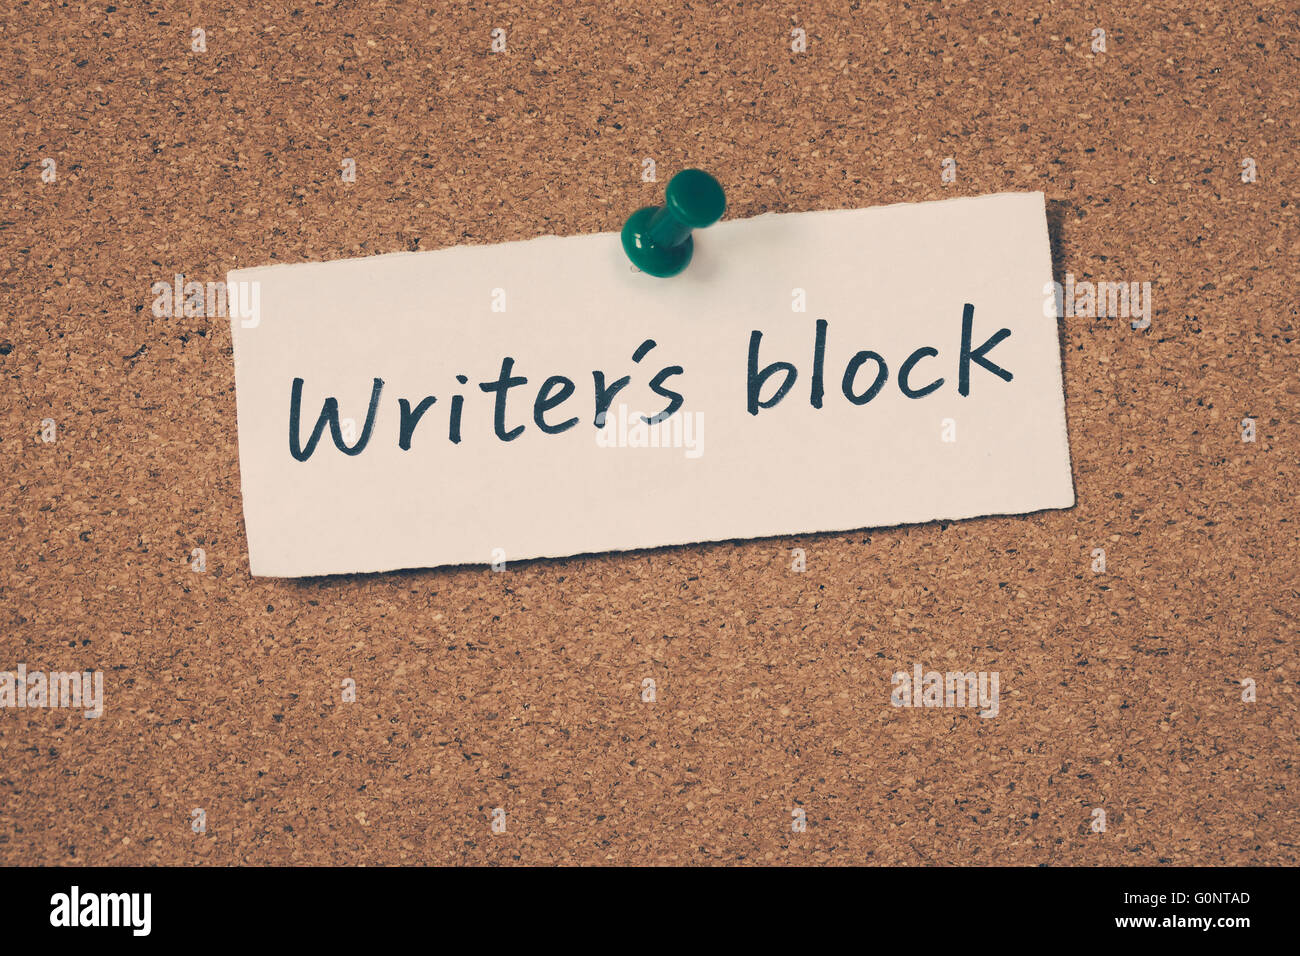 Writer's block Stock Photo